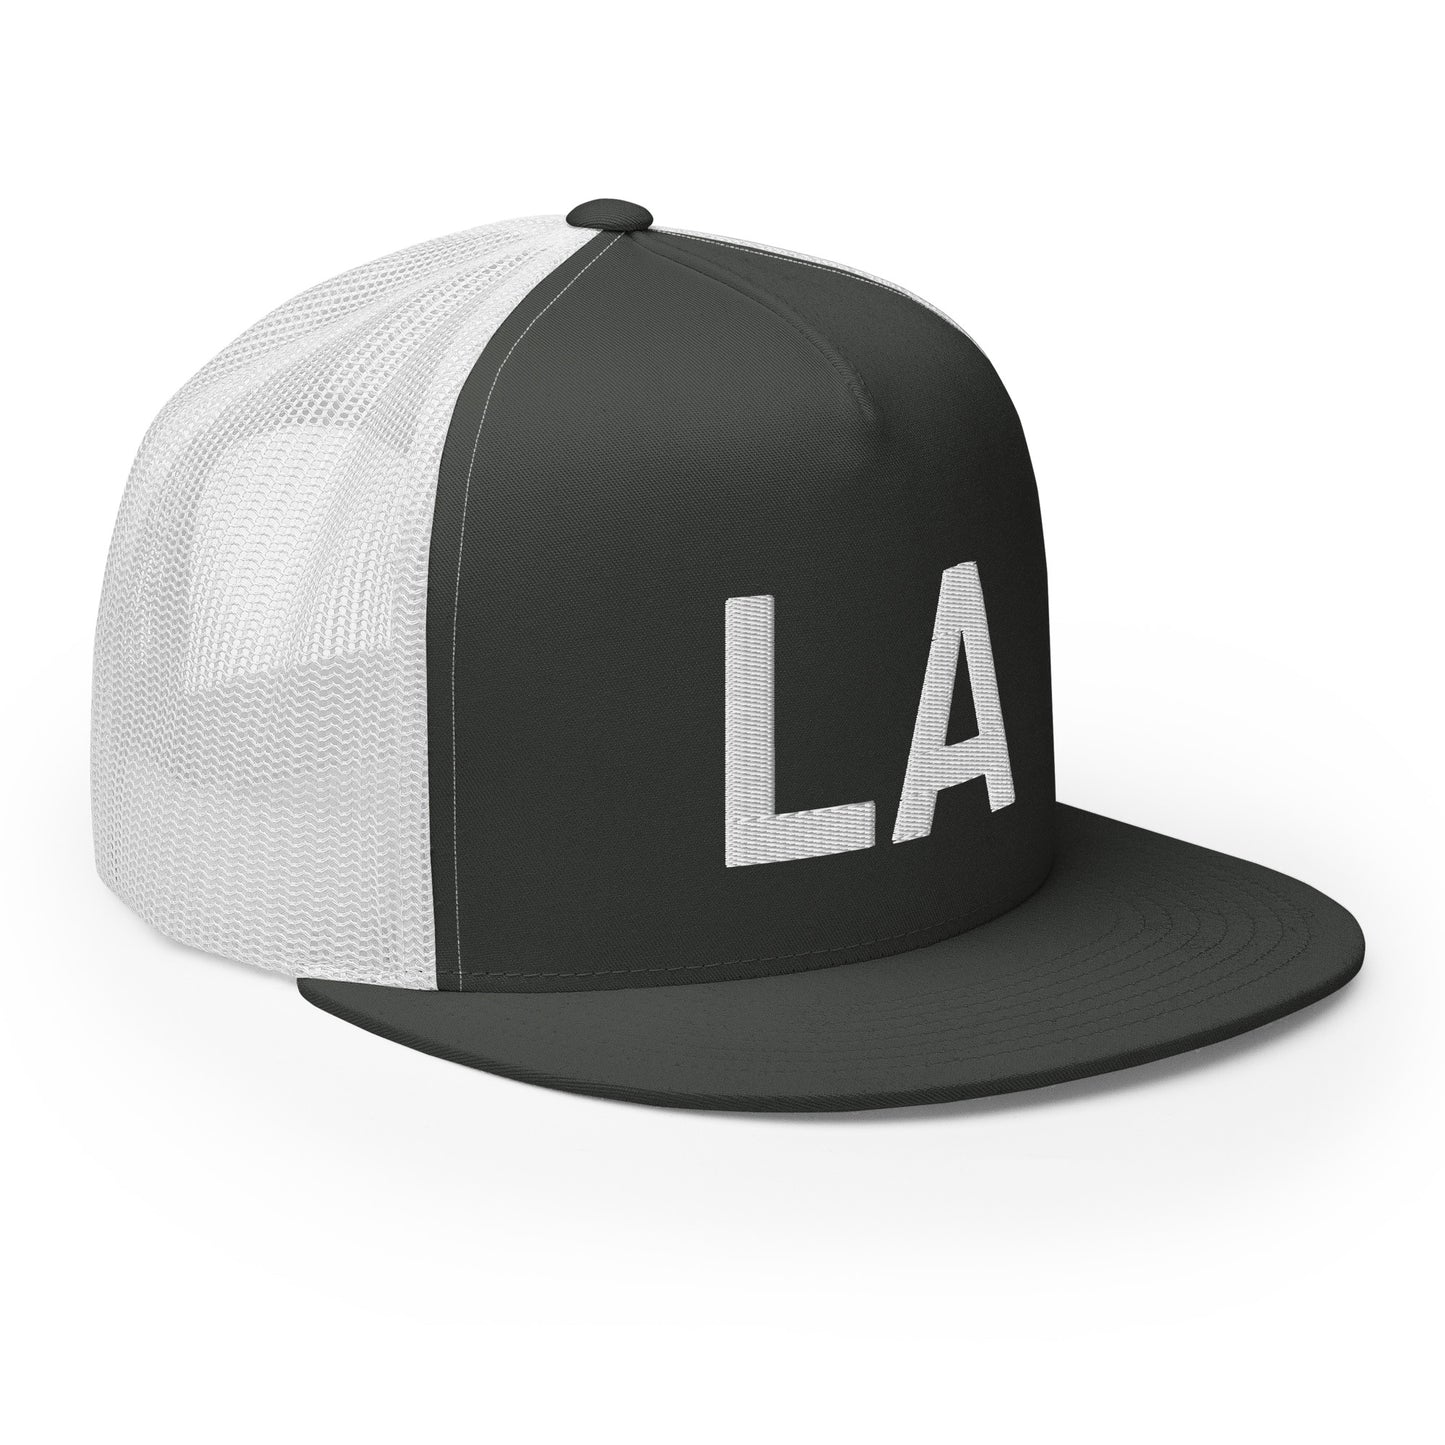 LA Trucker Hat